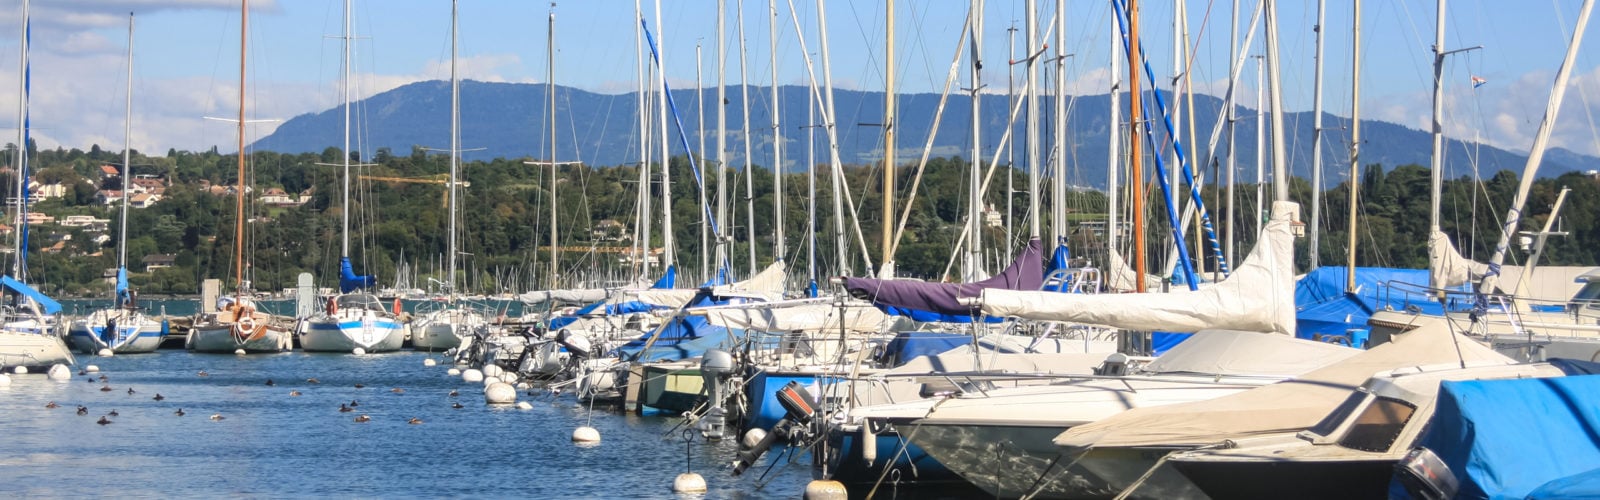 lake-geneva-boats